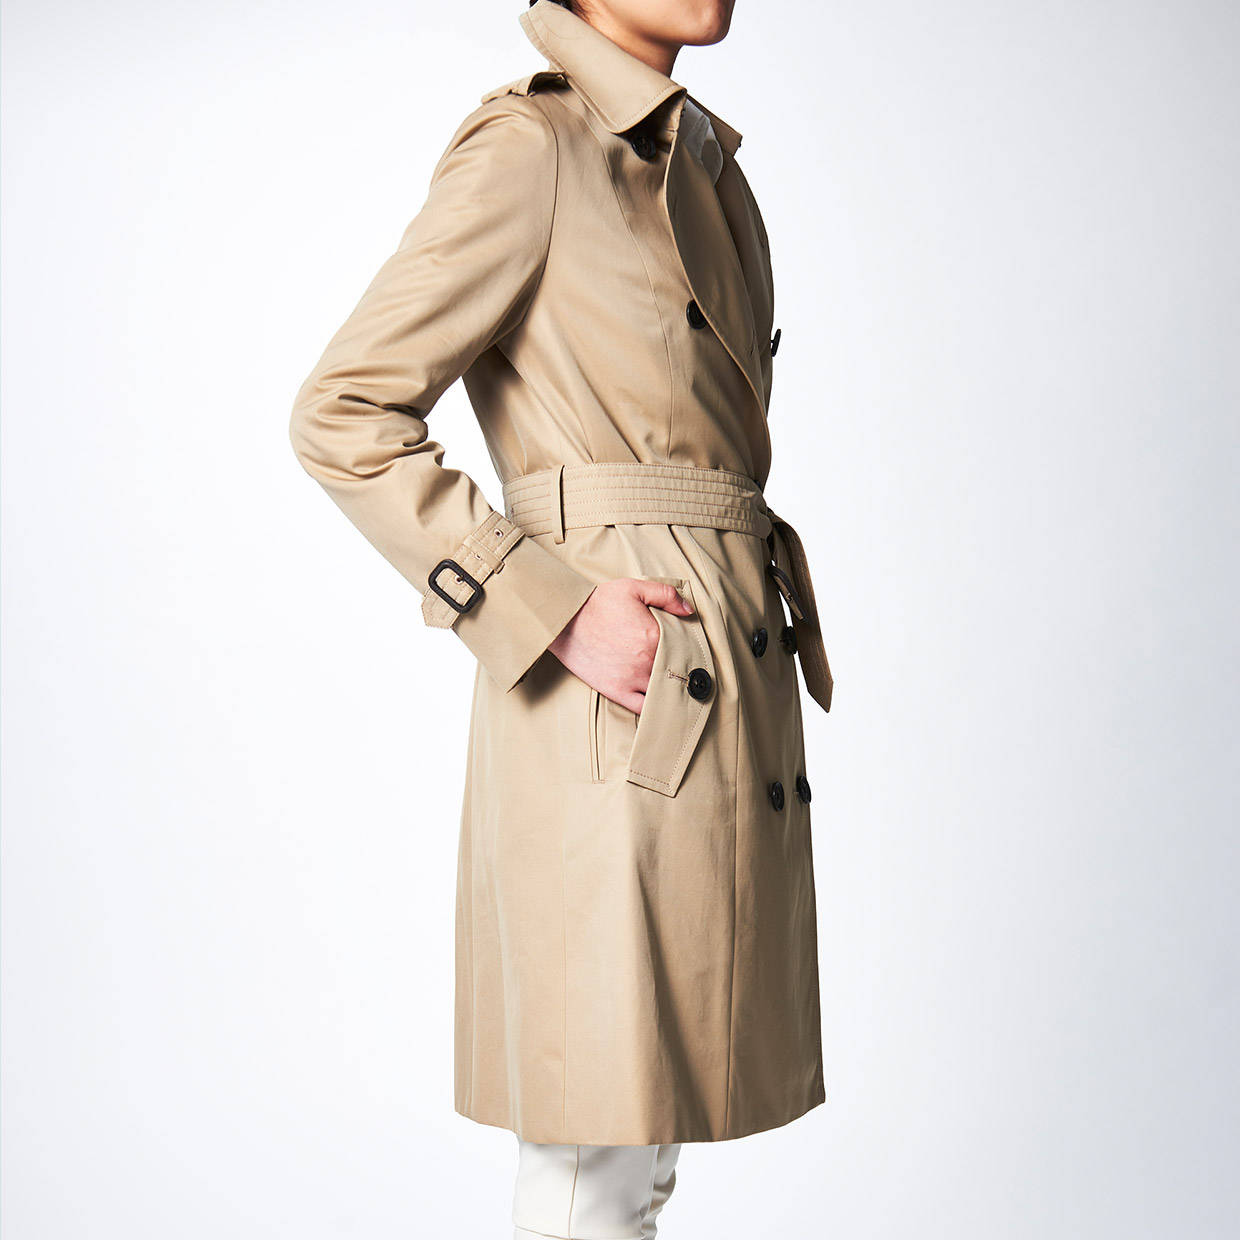 レディース トレンチコート 日本製上質コートのファクトリーブランド Styletex スタイルテックス